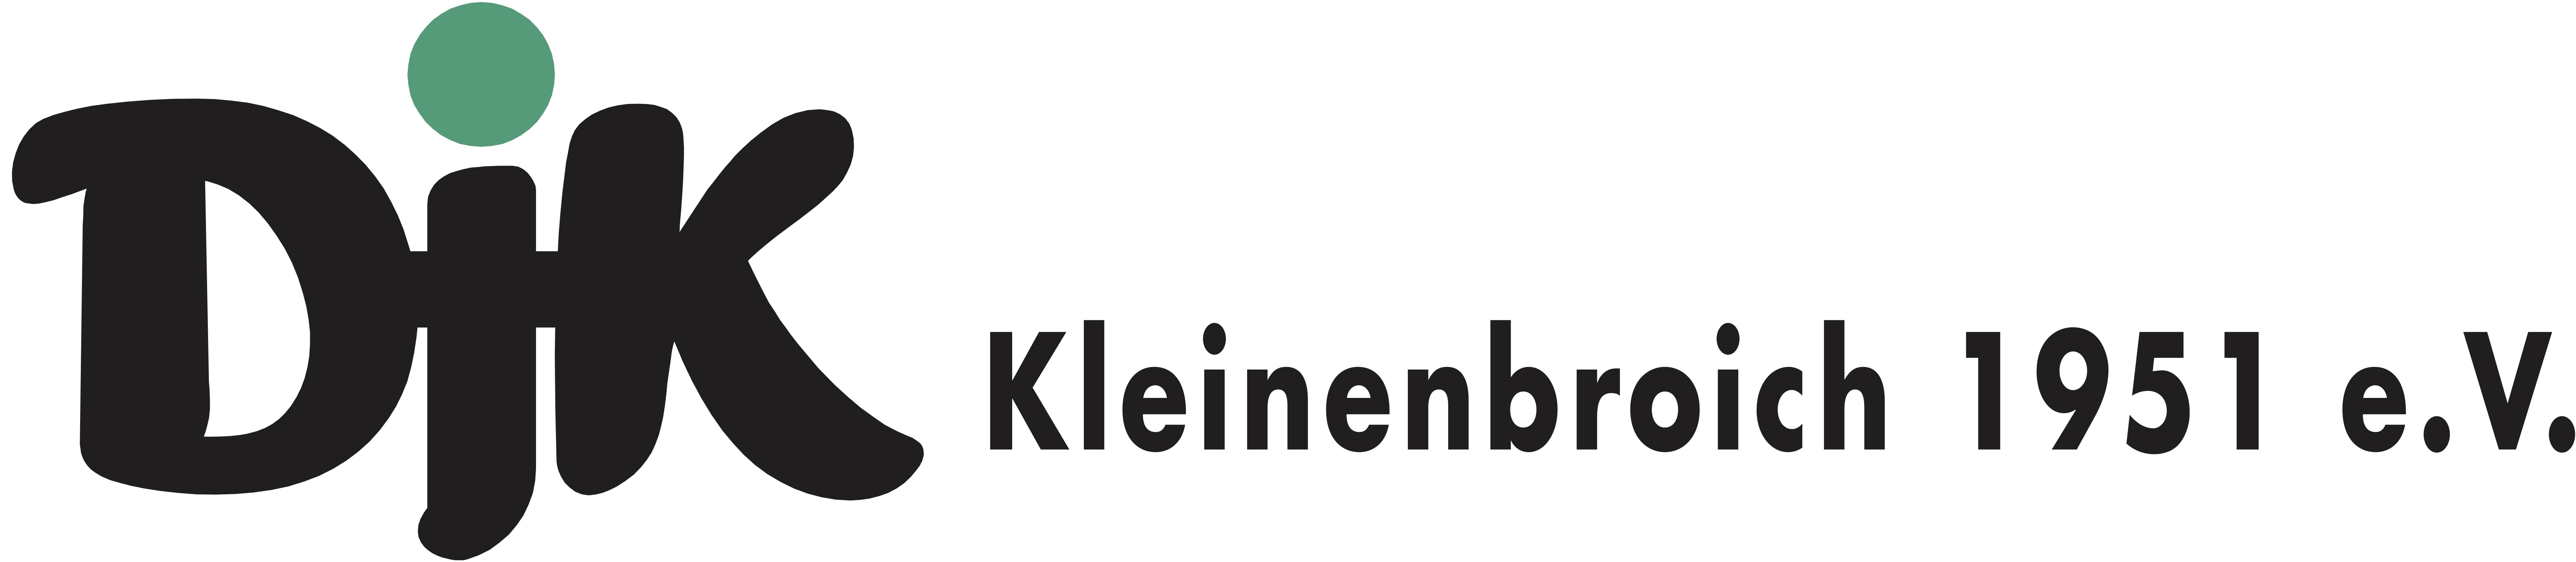 DJK Kleinenbroich Logo